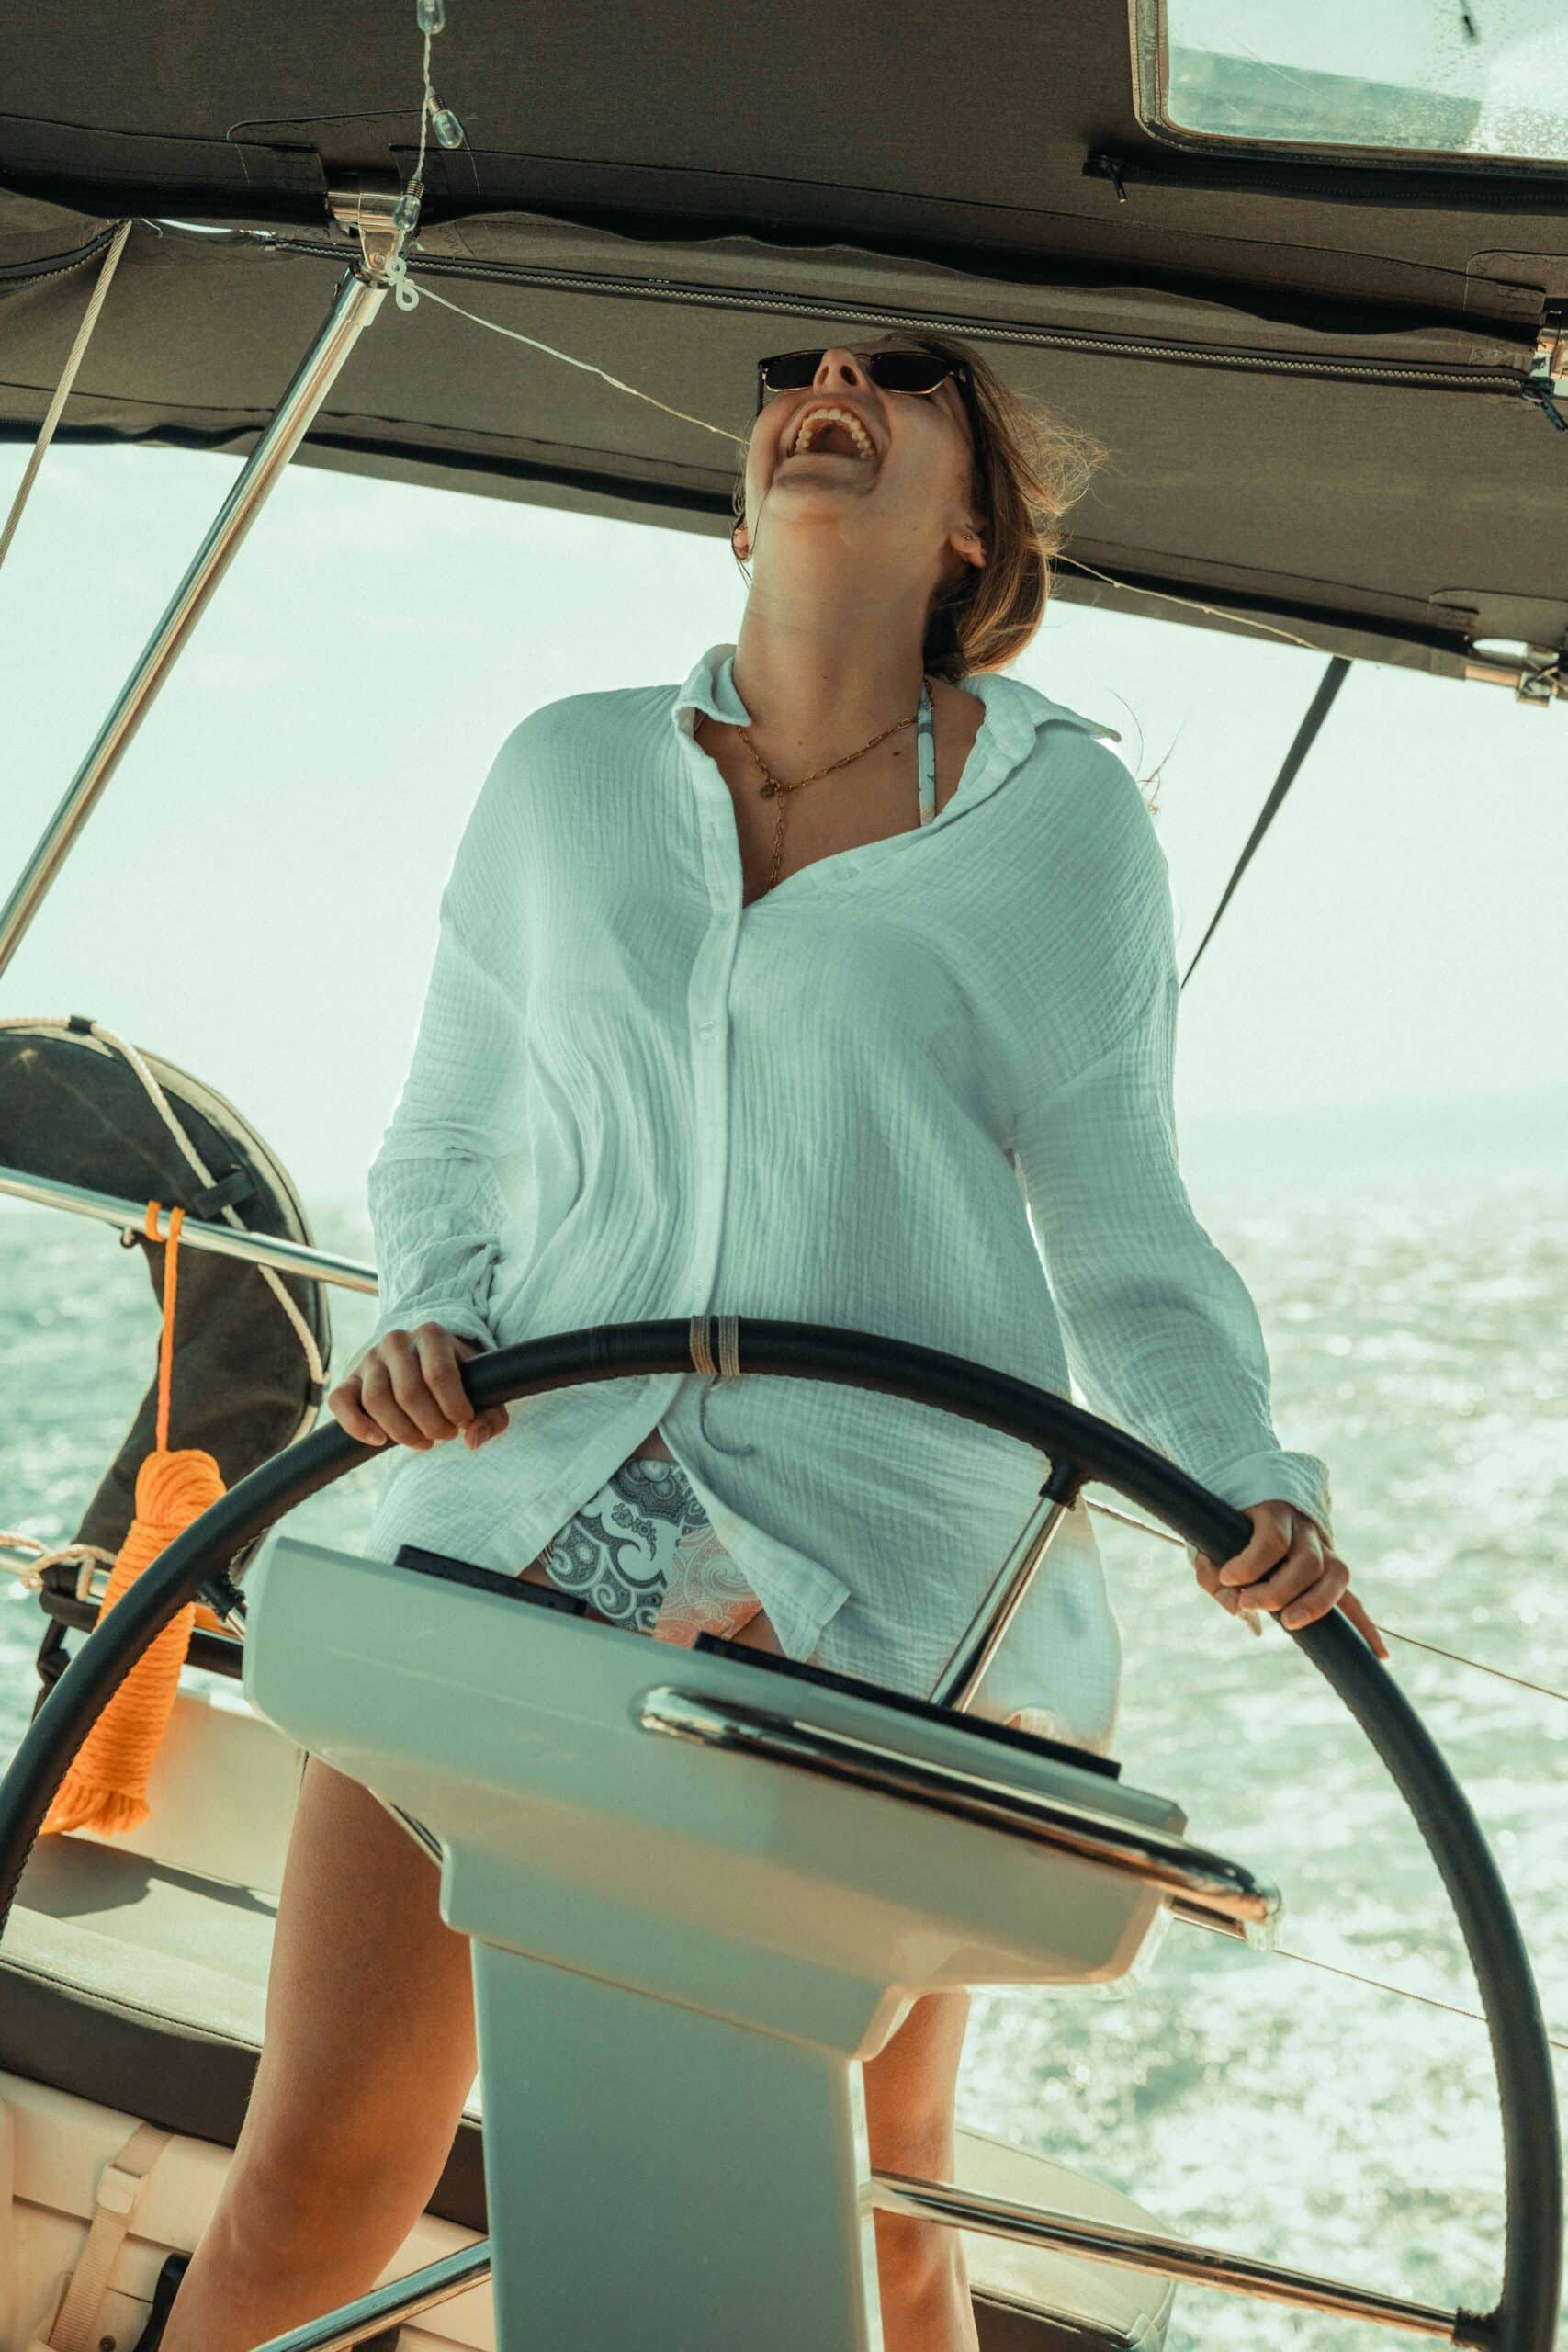 Eine Person mit weißem Hemd und Sonnenbrille steuert an einem sonnigen Tag fröhlich ein Boot. Die Person steht am Steuer, im Hintergrund ist die Meereslandschaft zu sehen, die den berauschenden Geist des Segelns verkörpert.